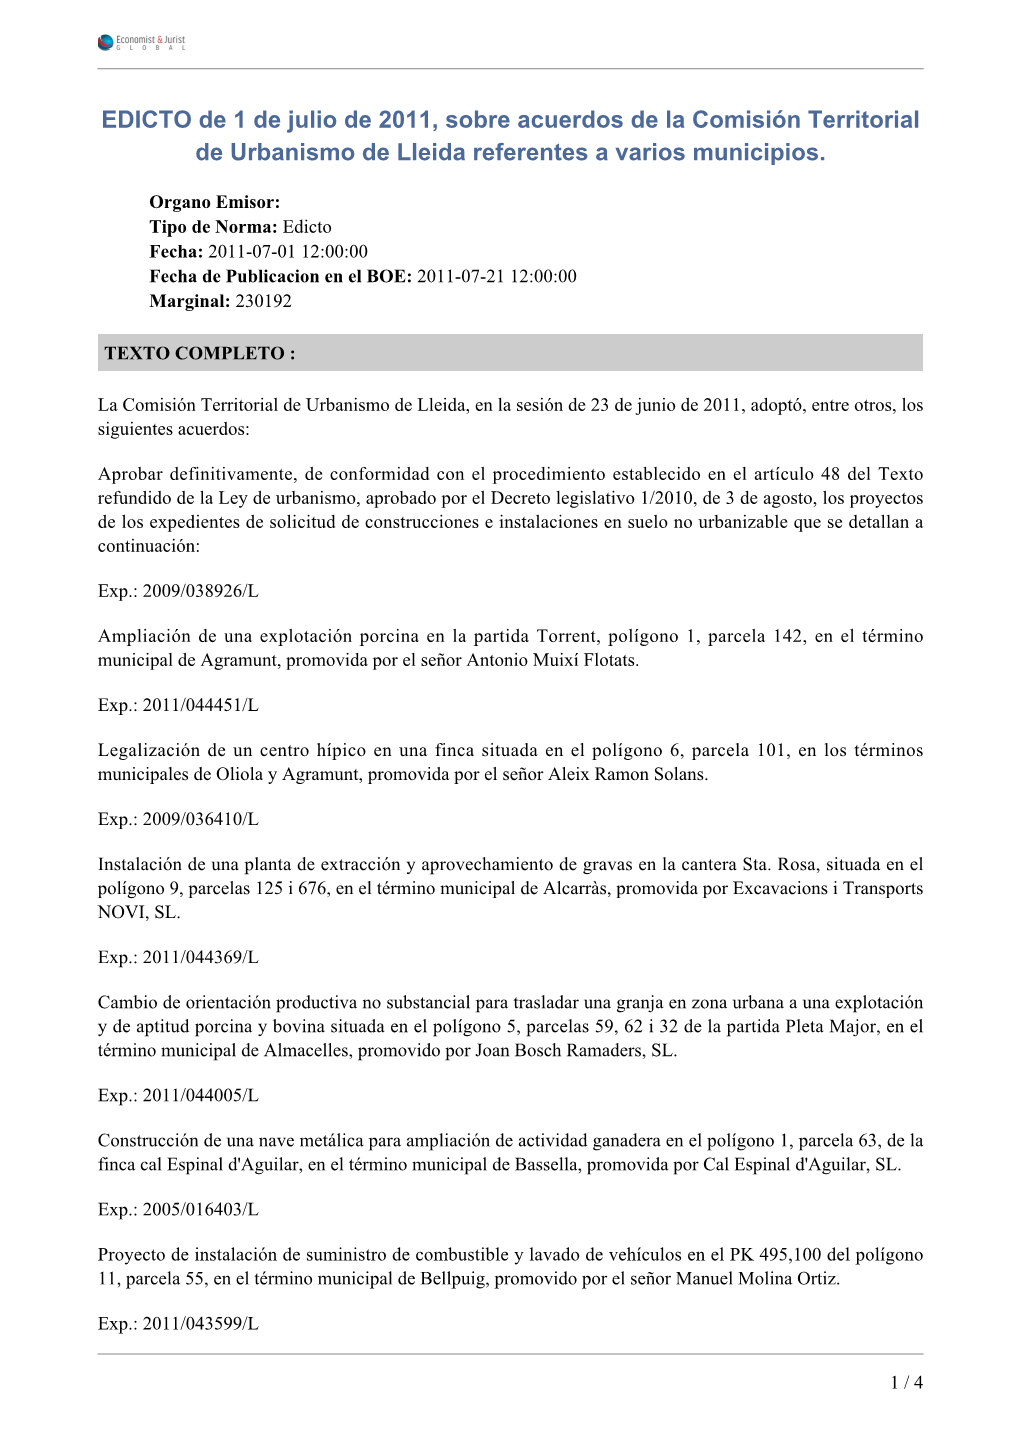 EDICTO De 1 De Julio De 2011, Sobre Acuerdos De La Comisión Territorial De Urbanismo De Lleida Referentes a Varios Municipios